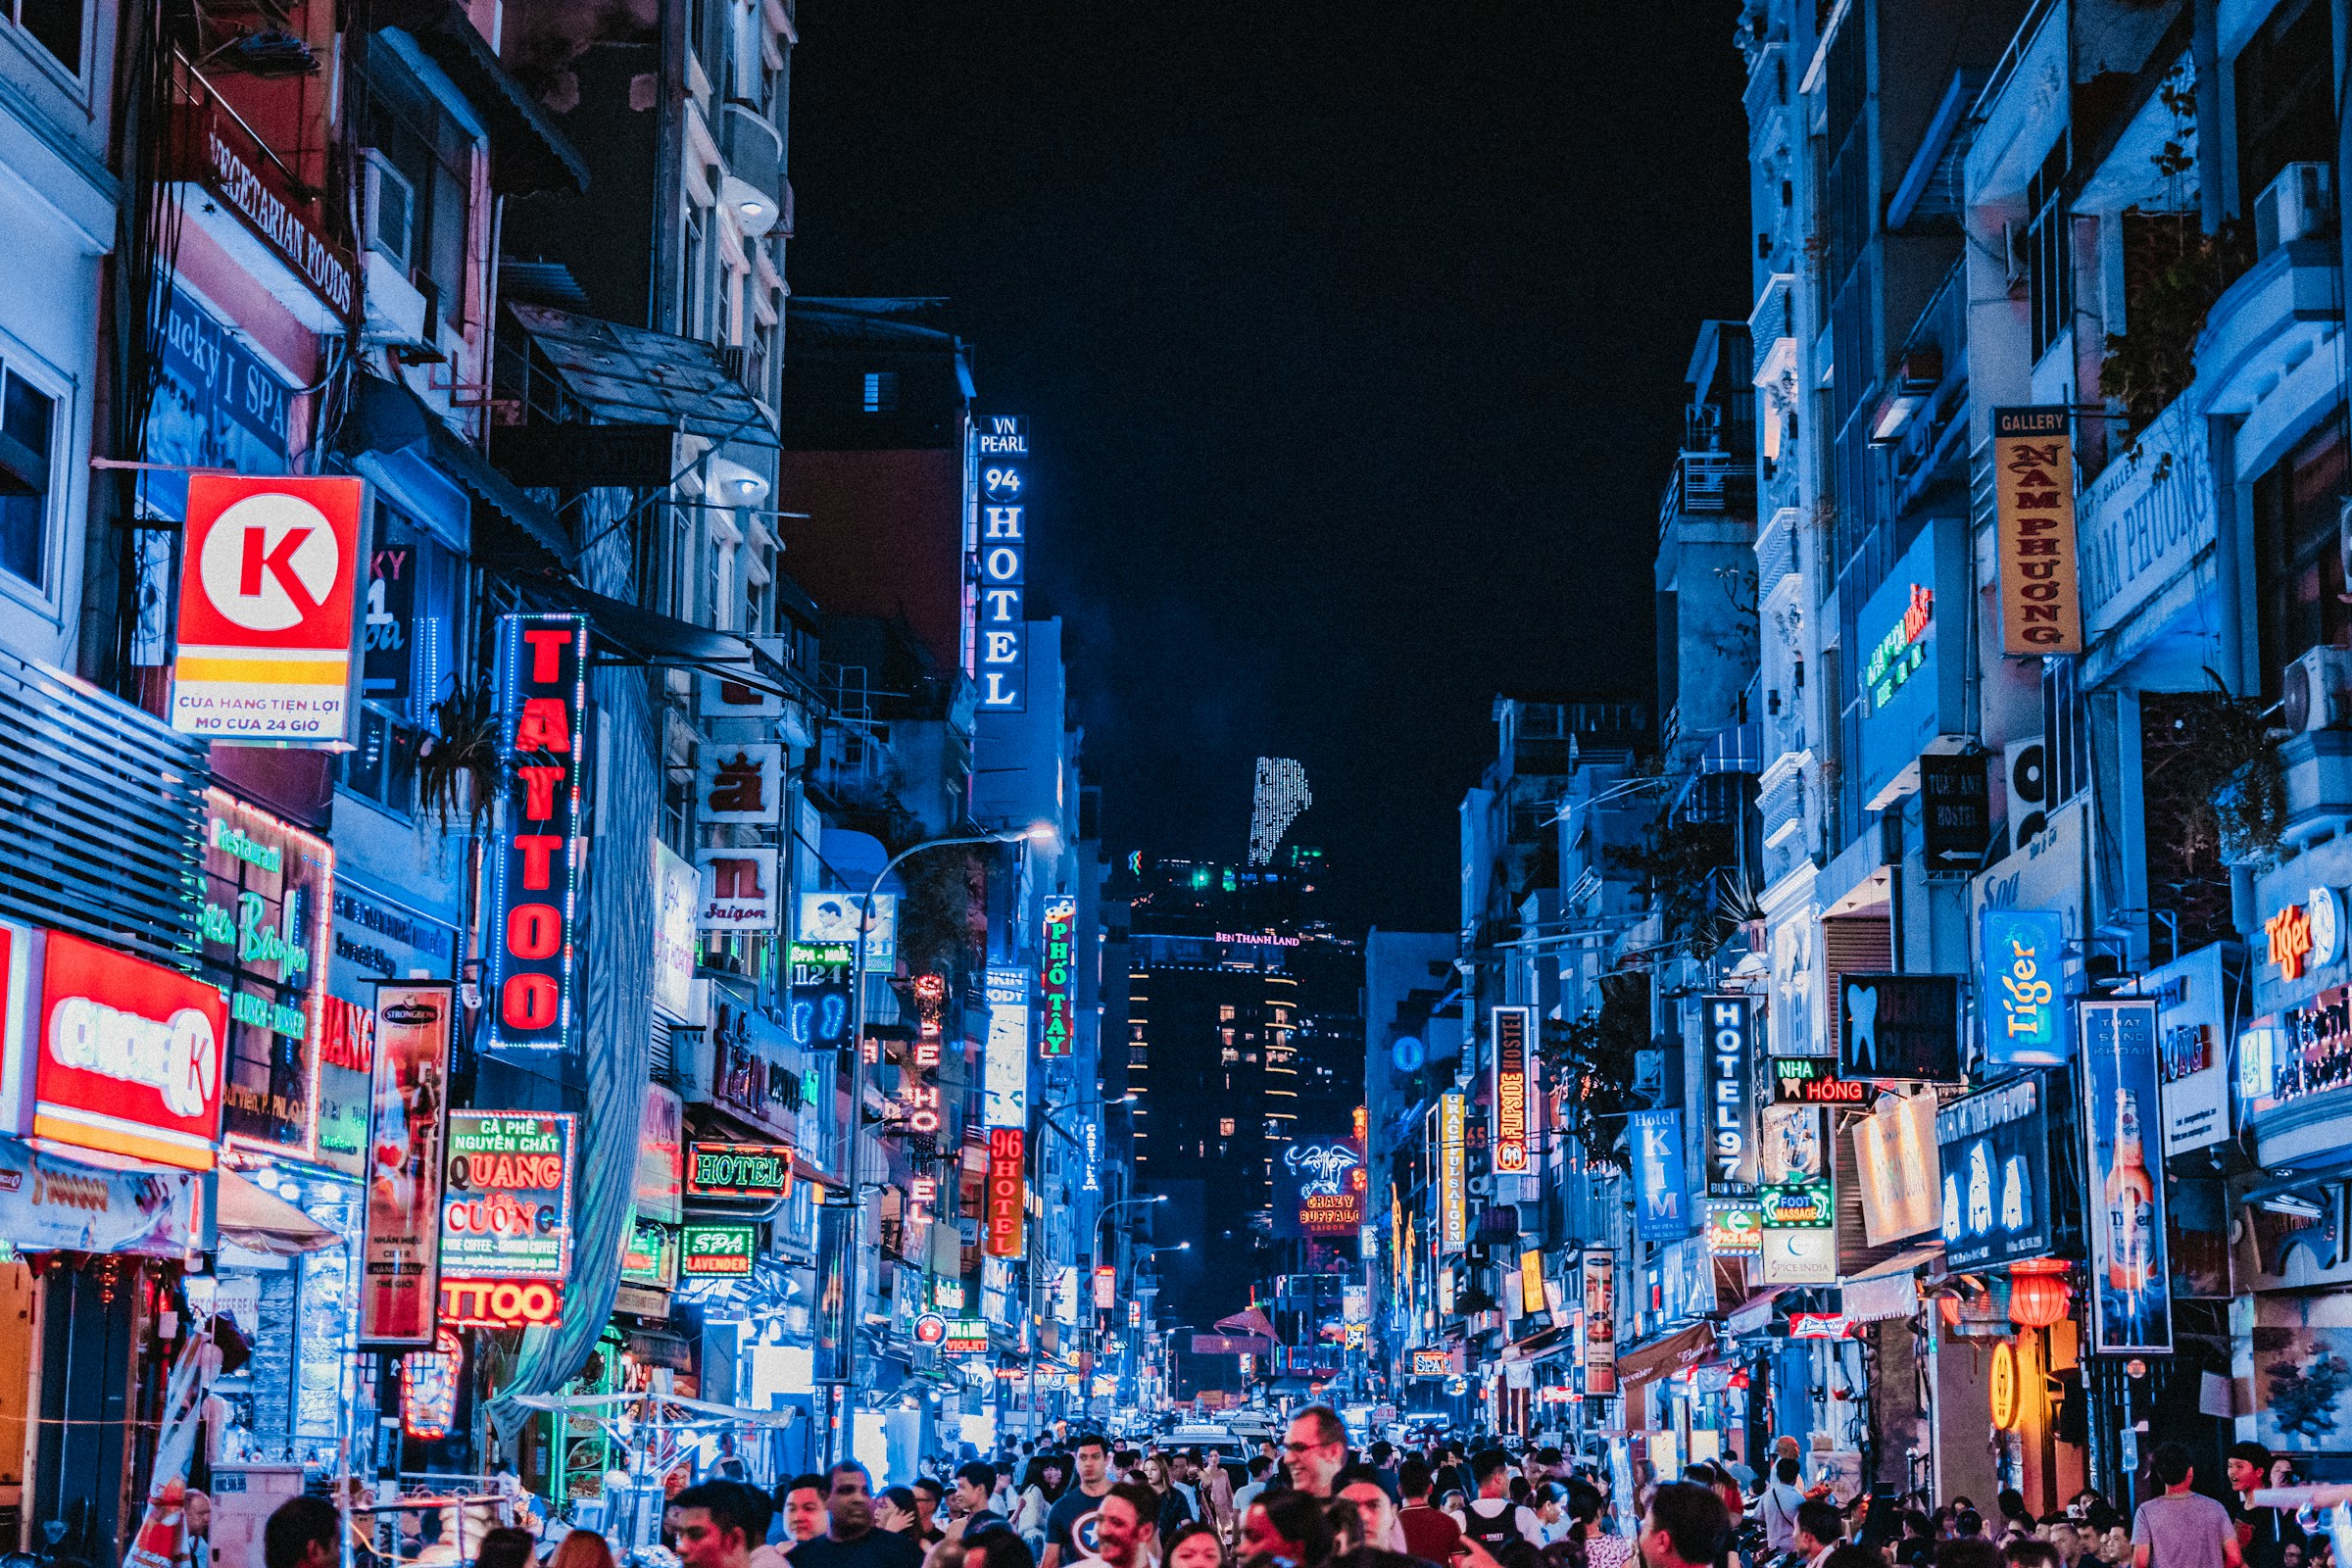 Vilkas kaupungin katu illalla Ho Chi Minh Cityssä neonvaloilla ja kylteillä, väkijoukko kävelee suurkaupungin ilmapiirissä.